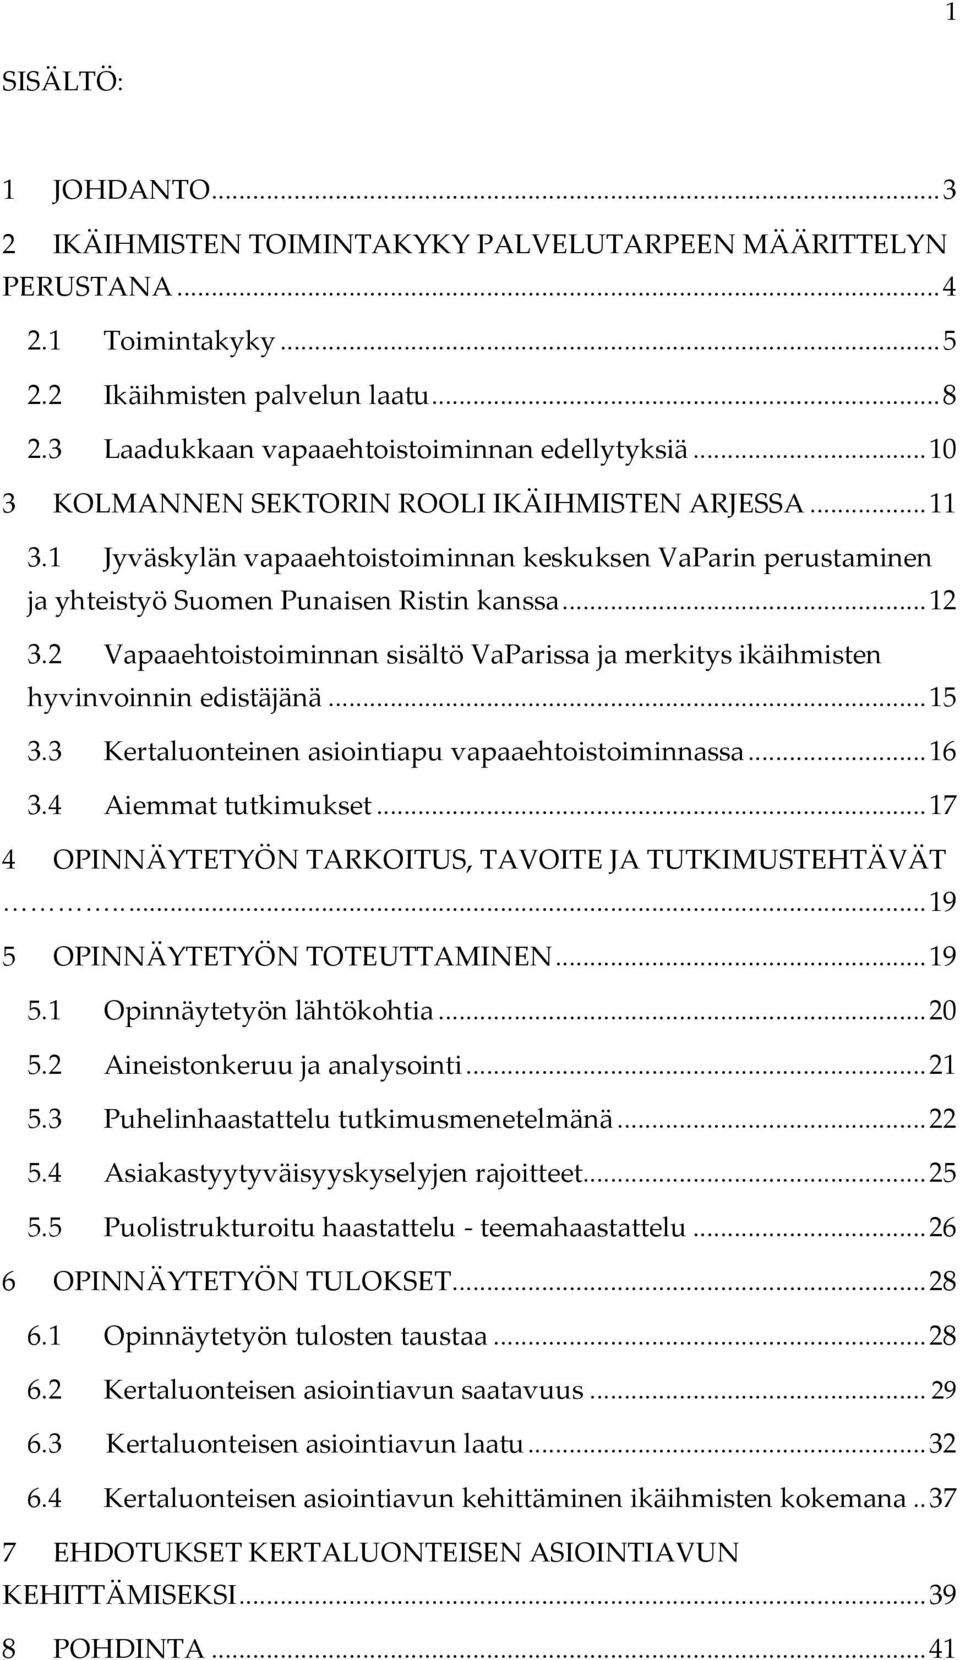 1 Jyväskylän vapaaehtoistoiminnan keskuksen VaParin perustaminen ja yhteistyö Suomen Punaisen Ristin kanssa... 12 3.